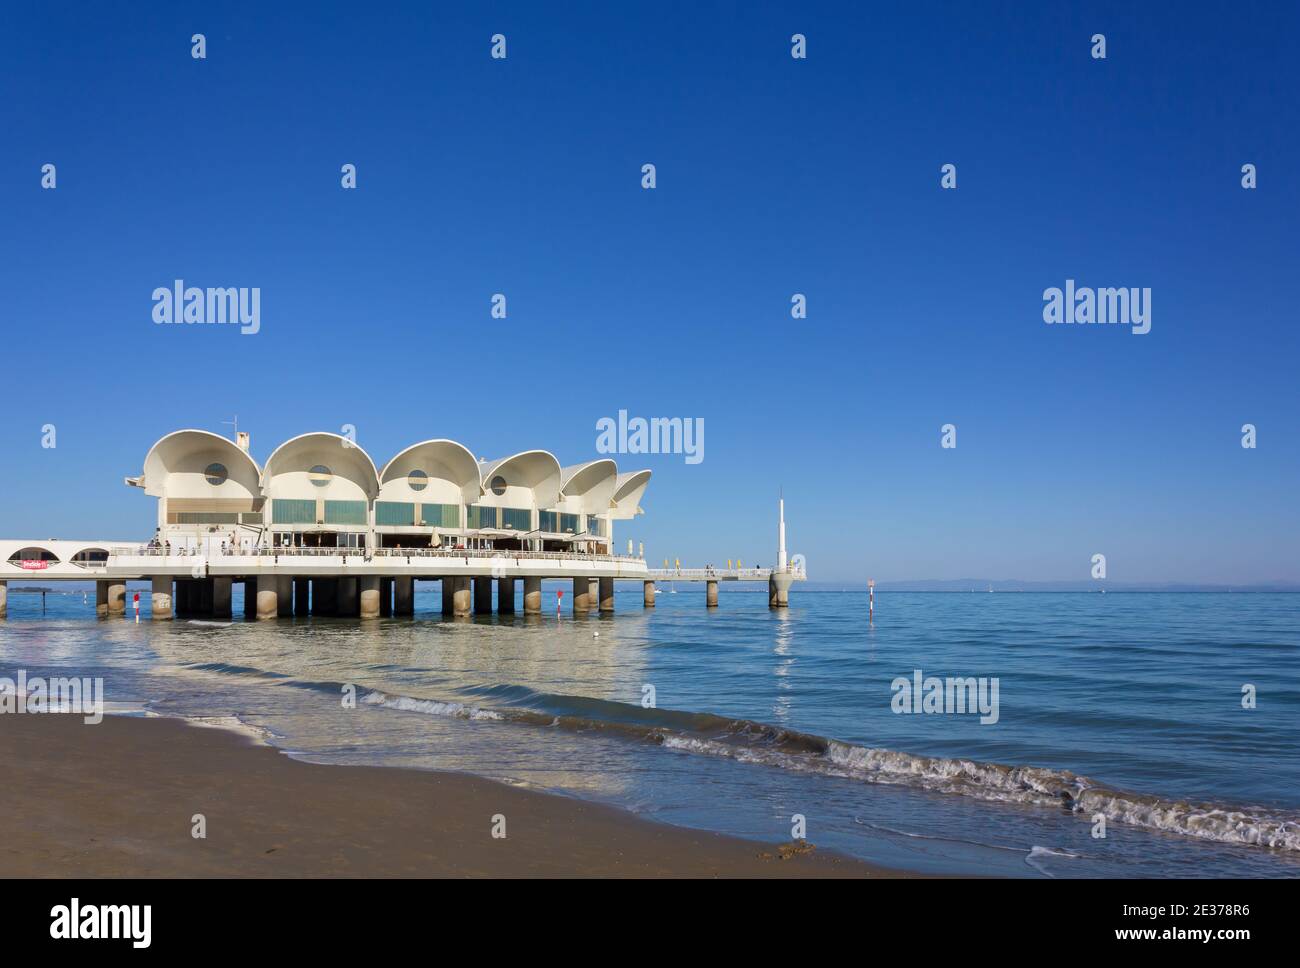 LIGNANO SABBIADORO, Italie - 30 septembre 2018 : la célèbre terrasse face à la mer sur la plage, symbole de la station balnéaire de Lignano Sabbiadoro Banque D'Images